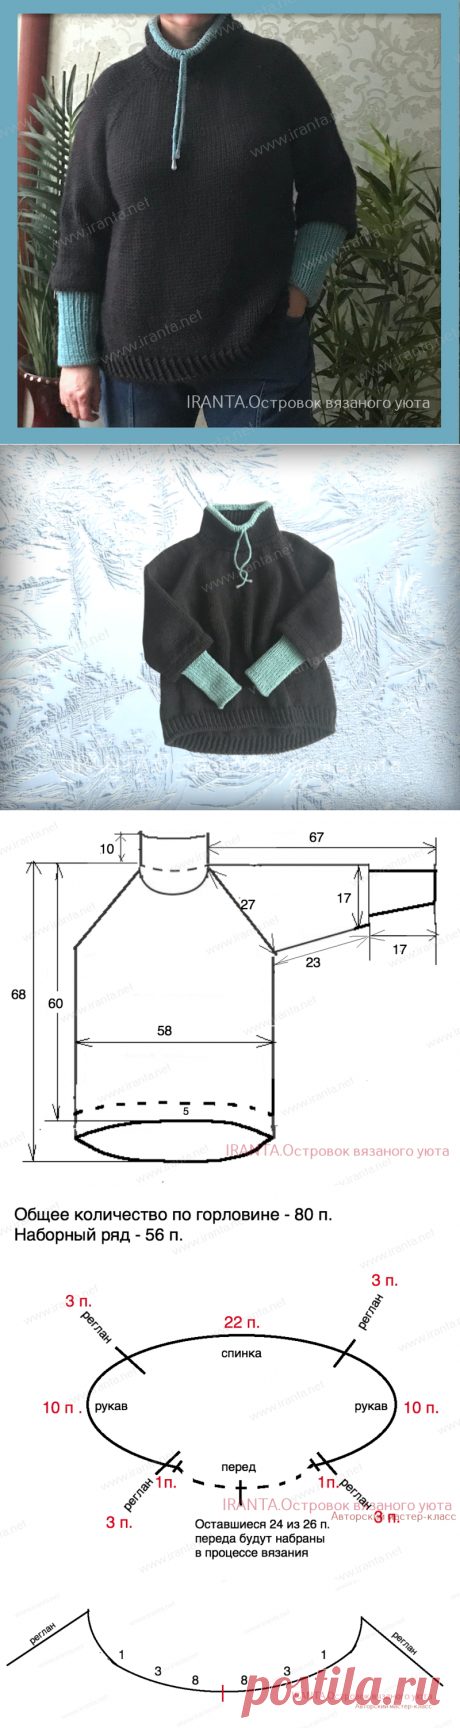 Свитер-реглан "Simple sweater" в спортивном стиле спицами